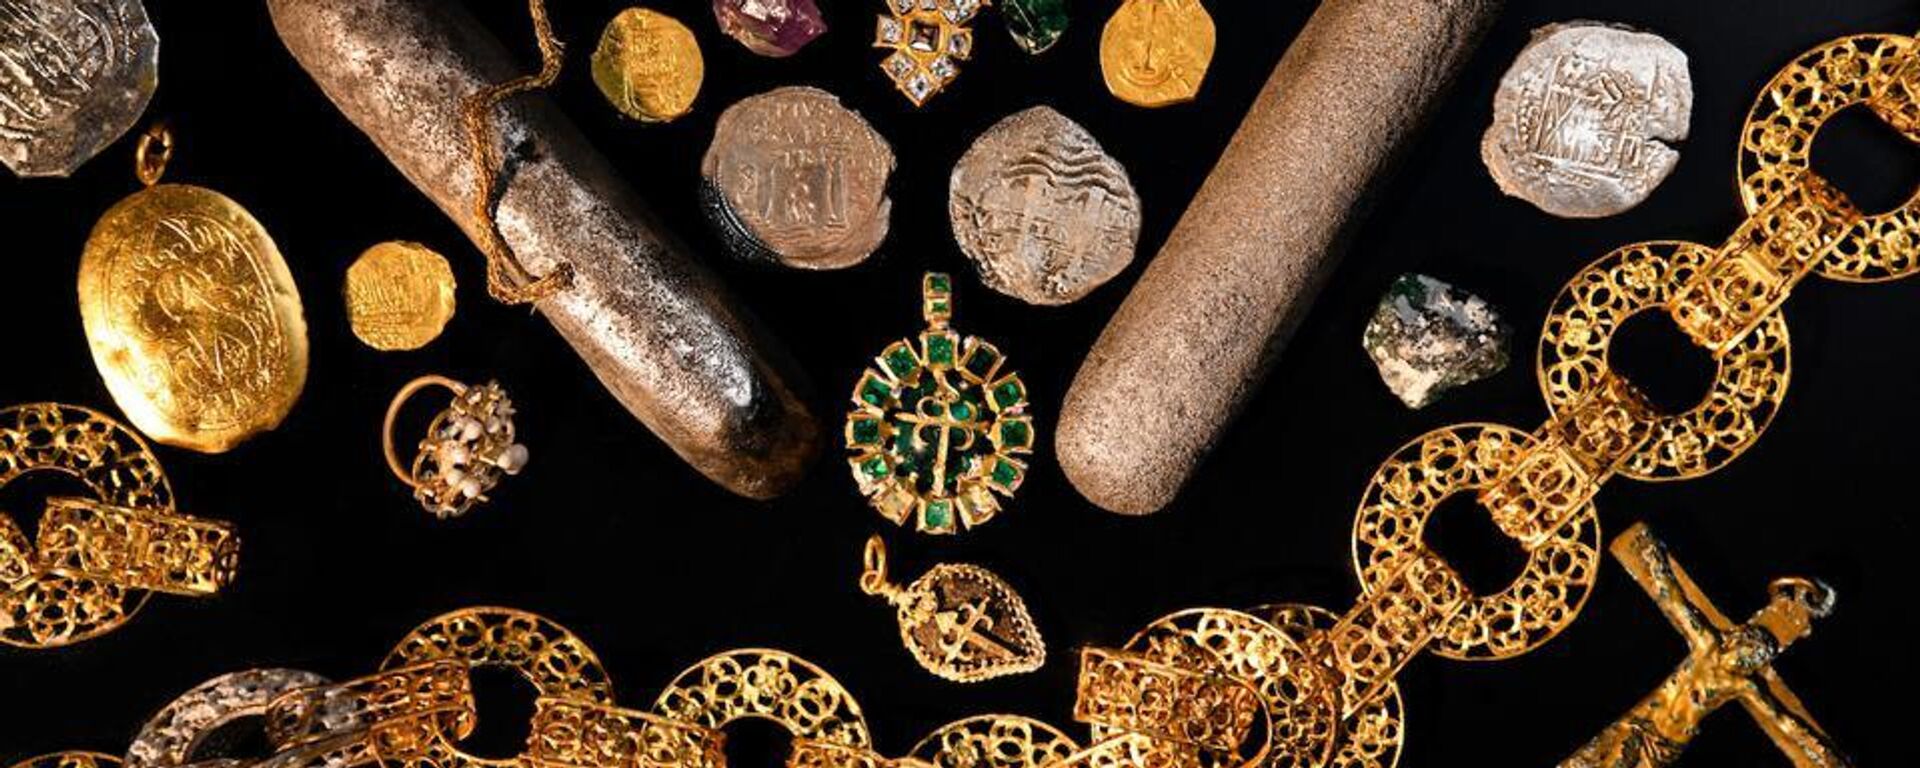 Numerosos artefactos de valor incalculable que incluyen: monedas de oro y plata sólidas, joyas, piedras preciosas - Sputnik Mundo, 1920, 09.08.2022